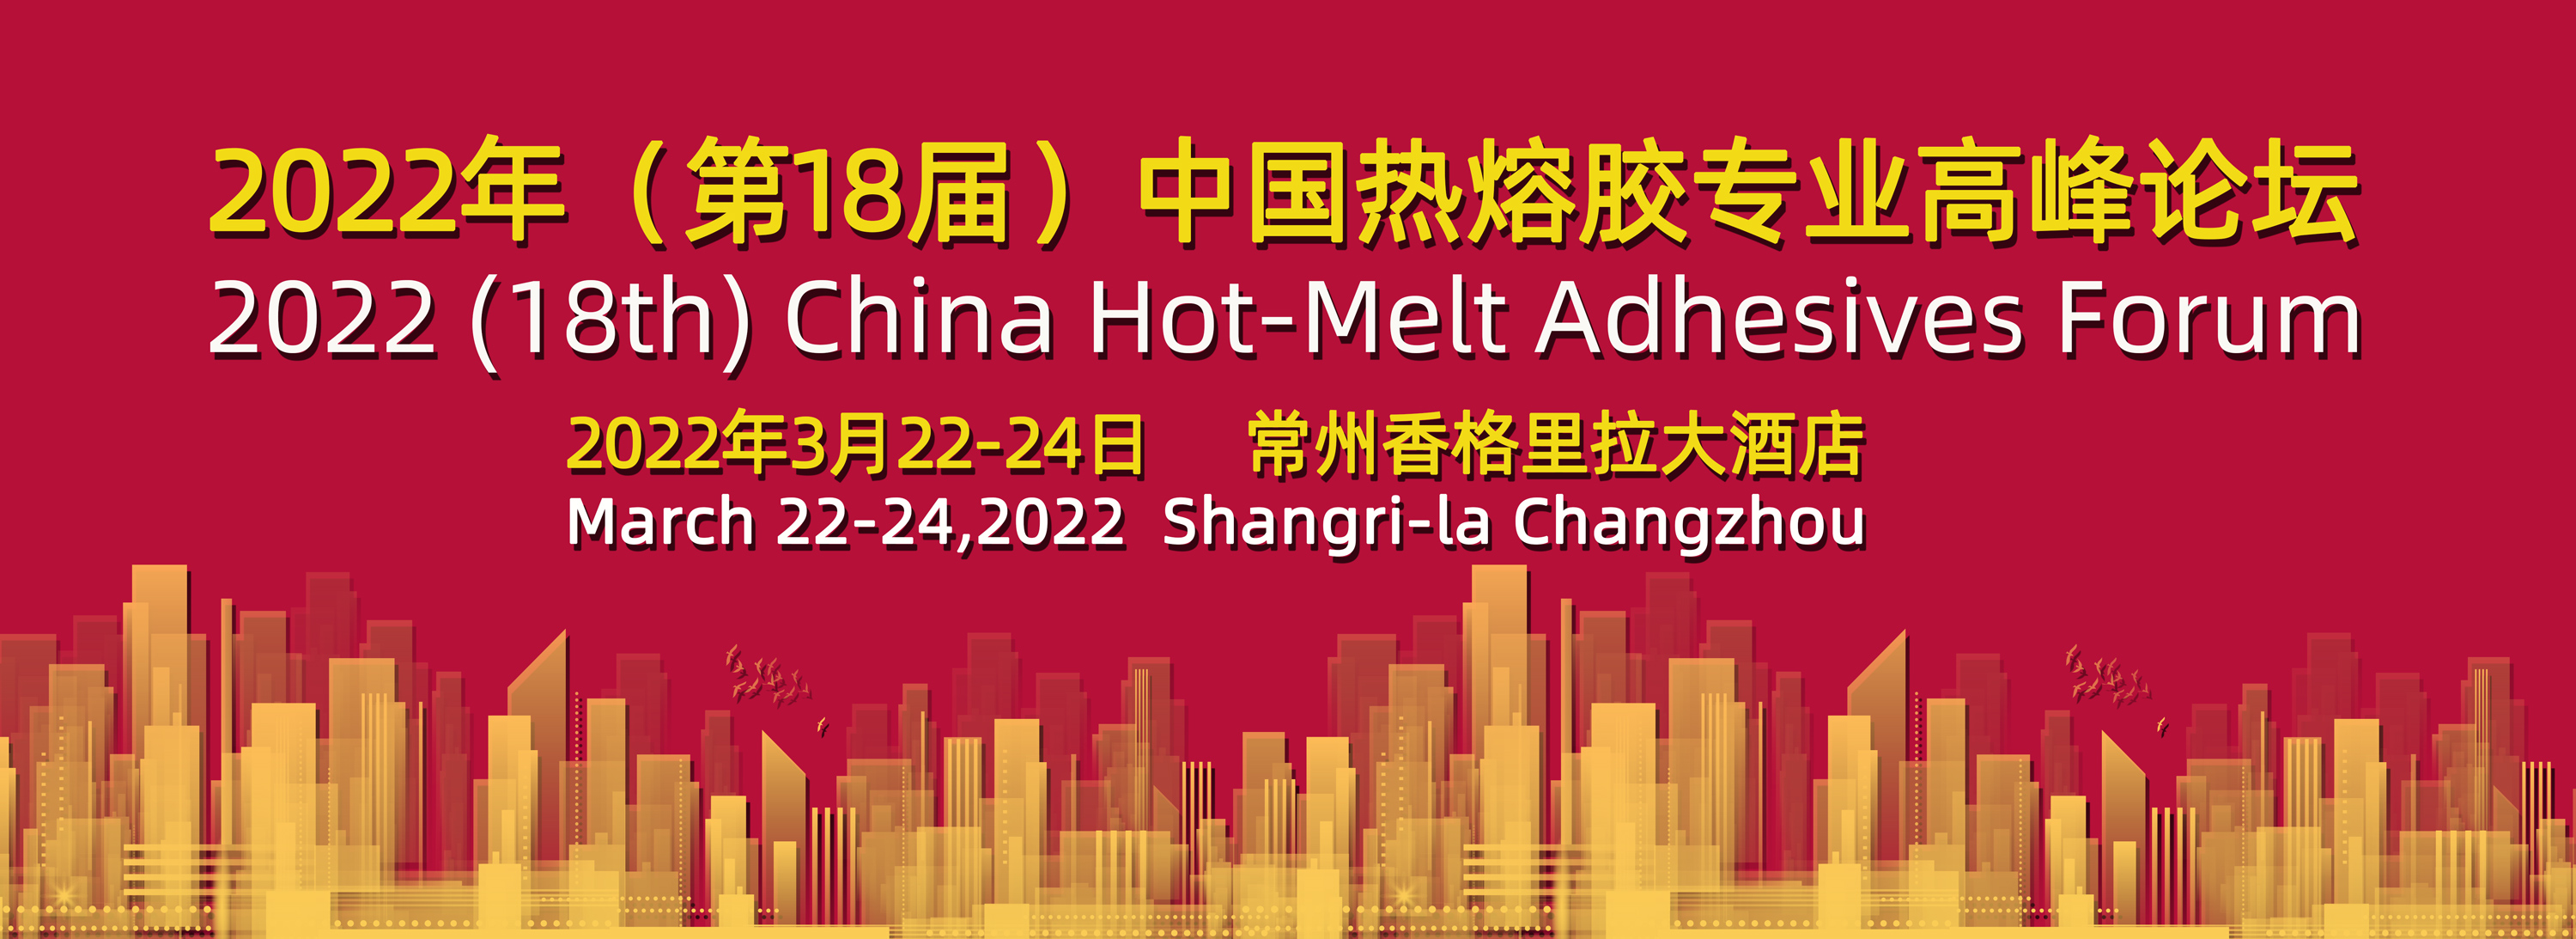 关于召开2022年(第18届)中国热熔胶专业高峰论坛